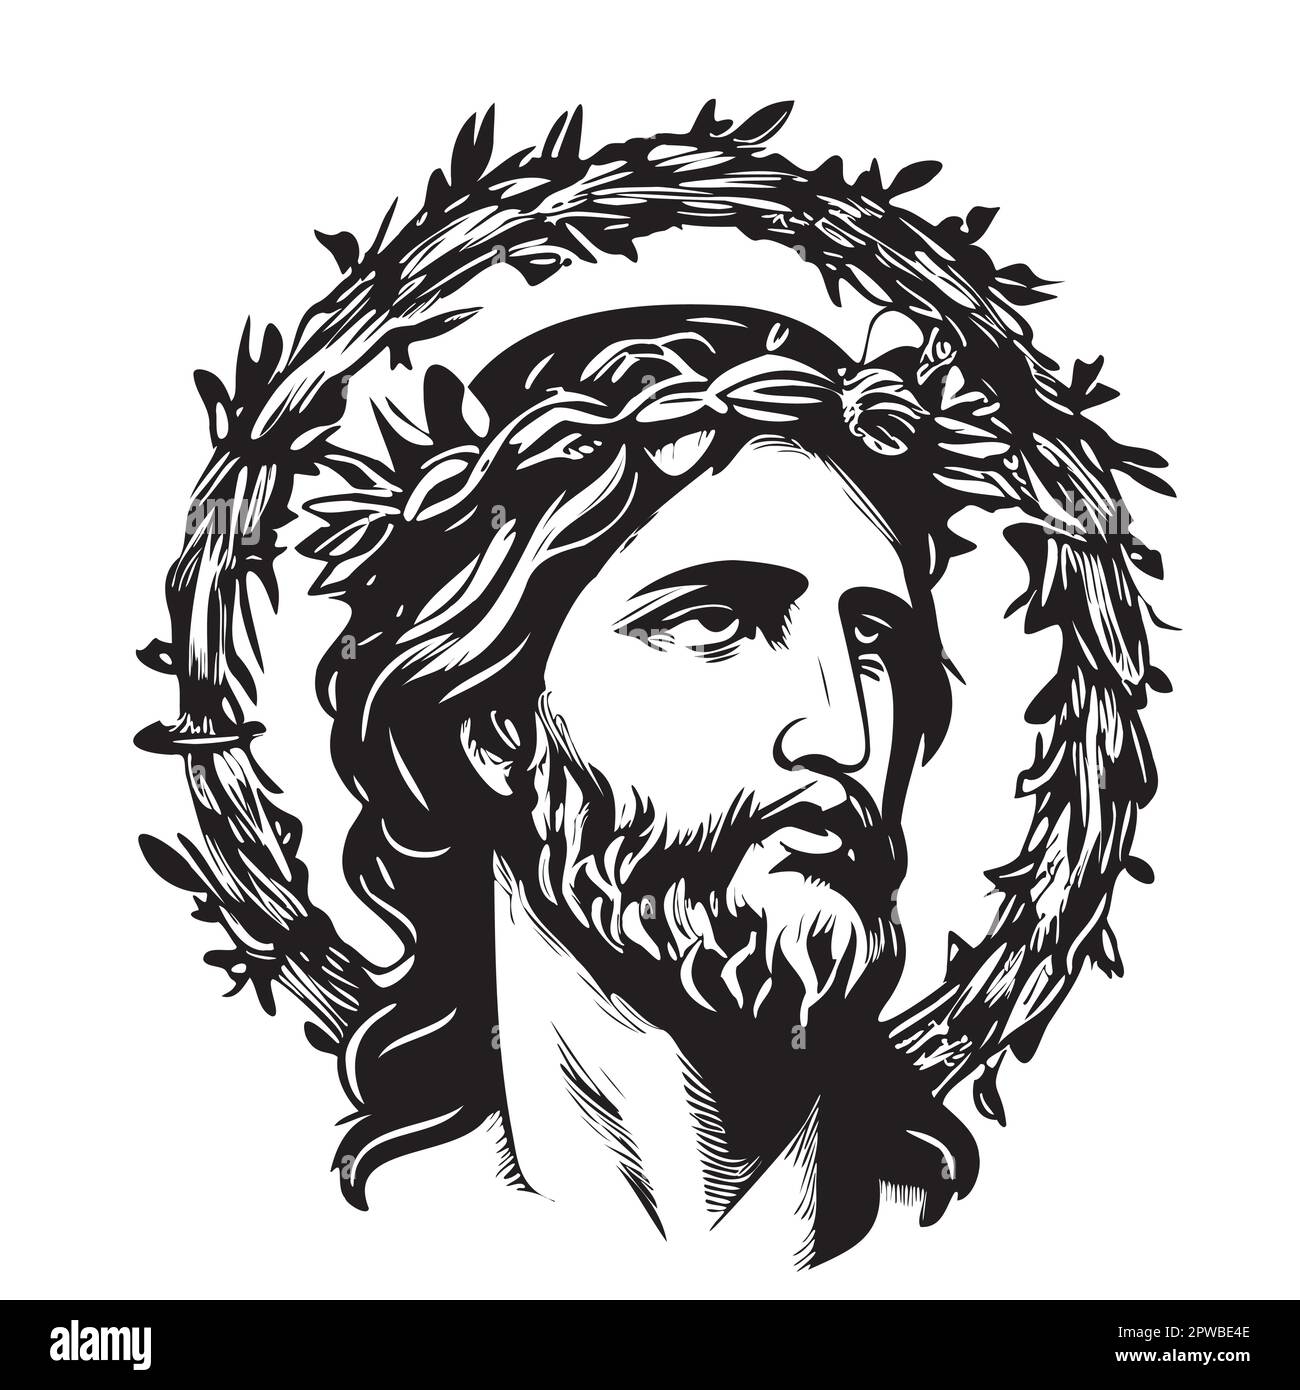 Ritratto di Gesù in una corona disegno disegnato a mano in stile doodle Vector Illustration Illustrazione Vettoriale